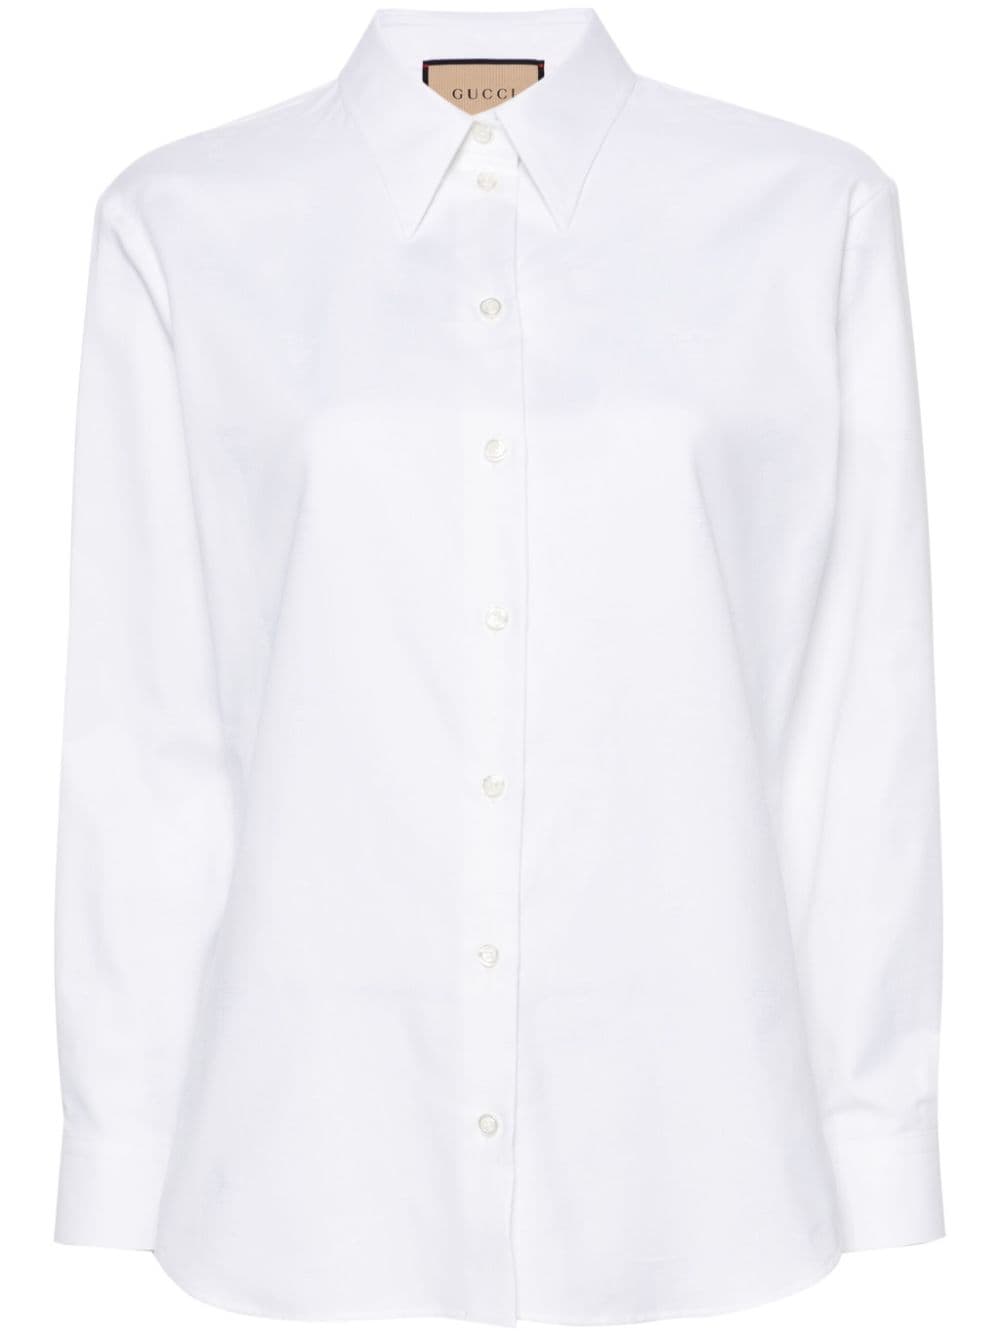 Gucci button cotton shirt - White